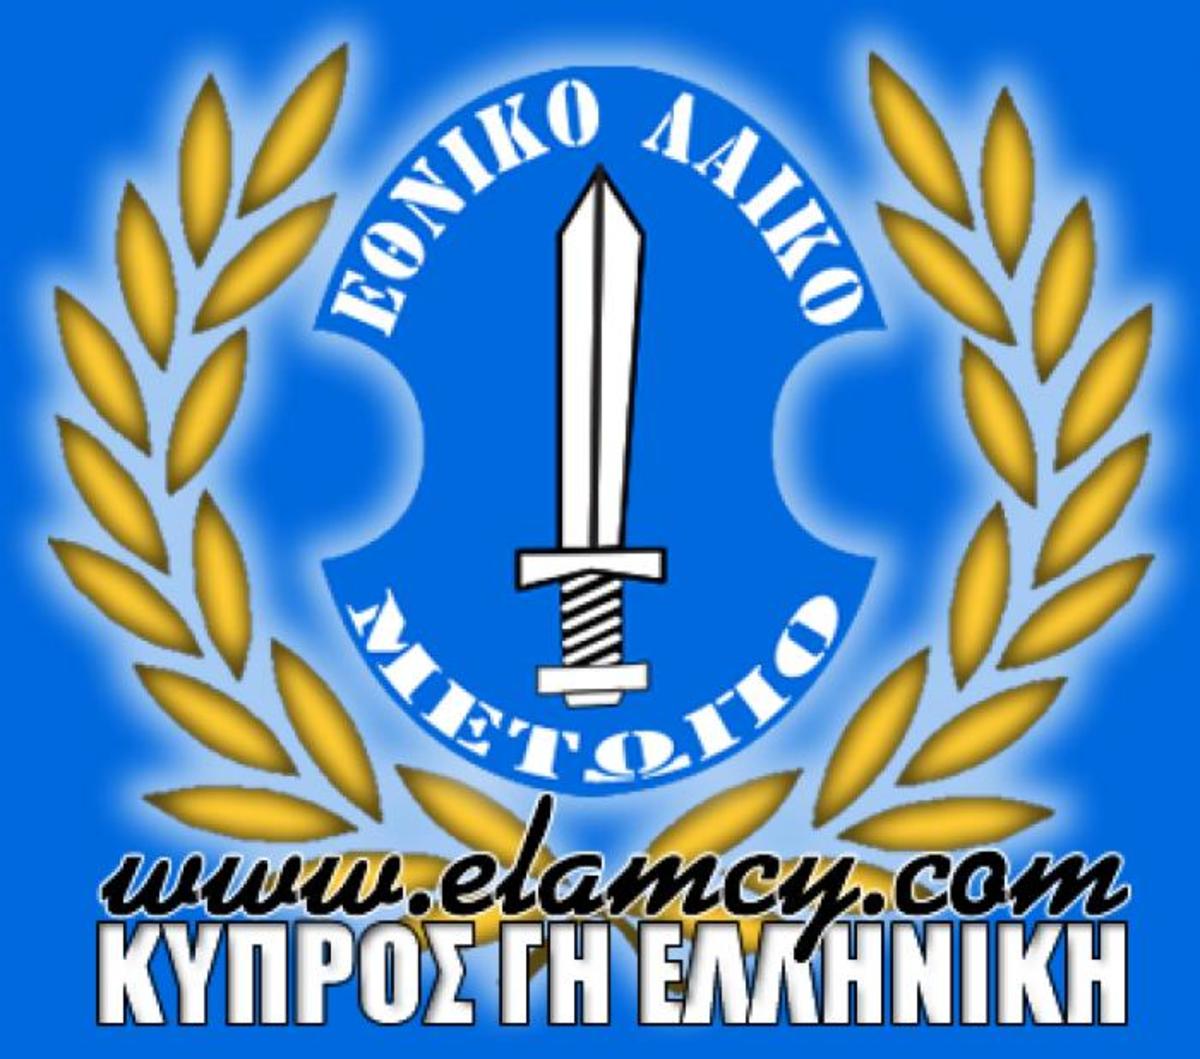 Κυπριακό κόμμα στηρίζει Κασιδιάρη!